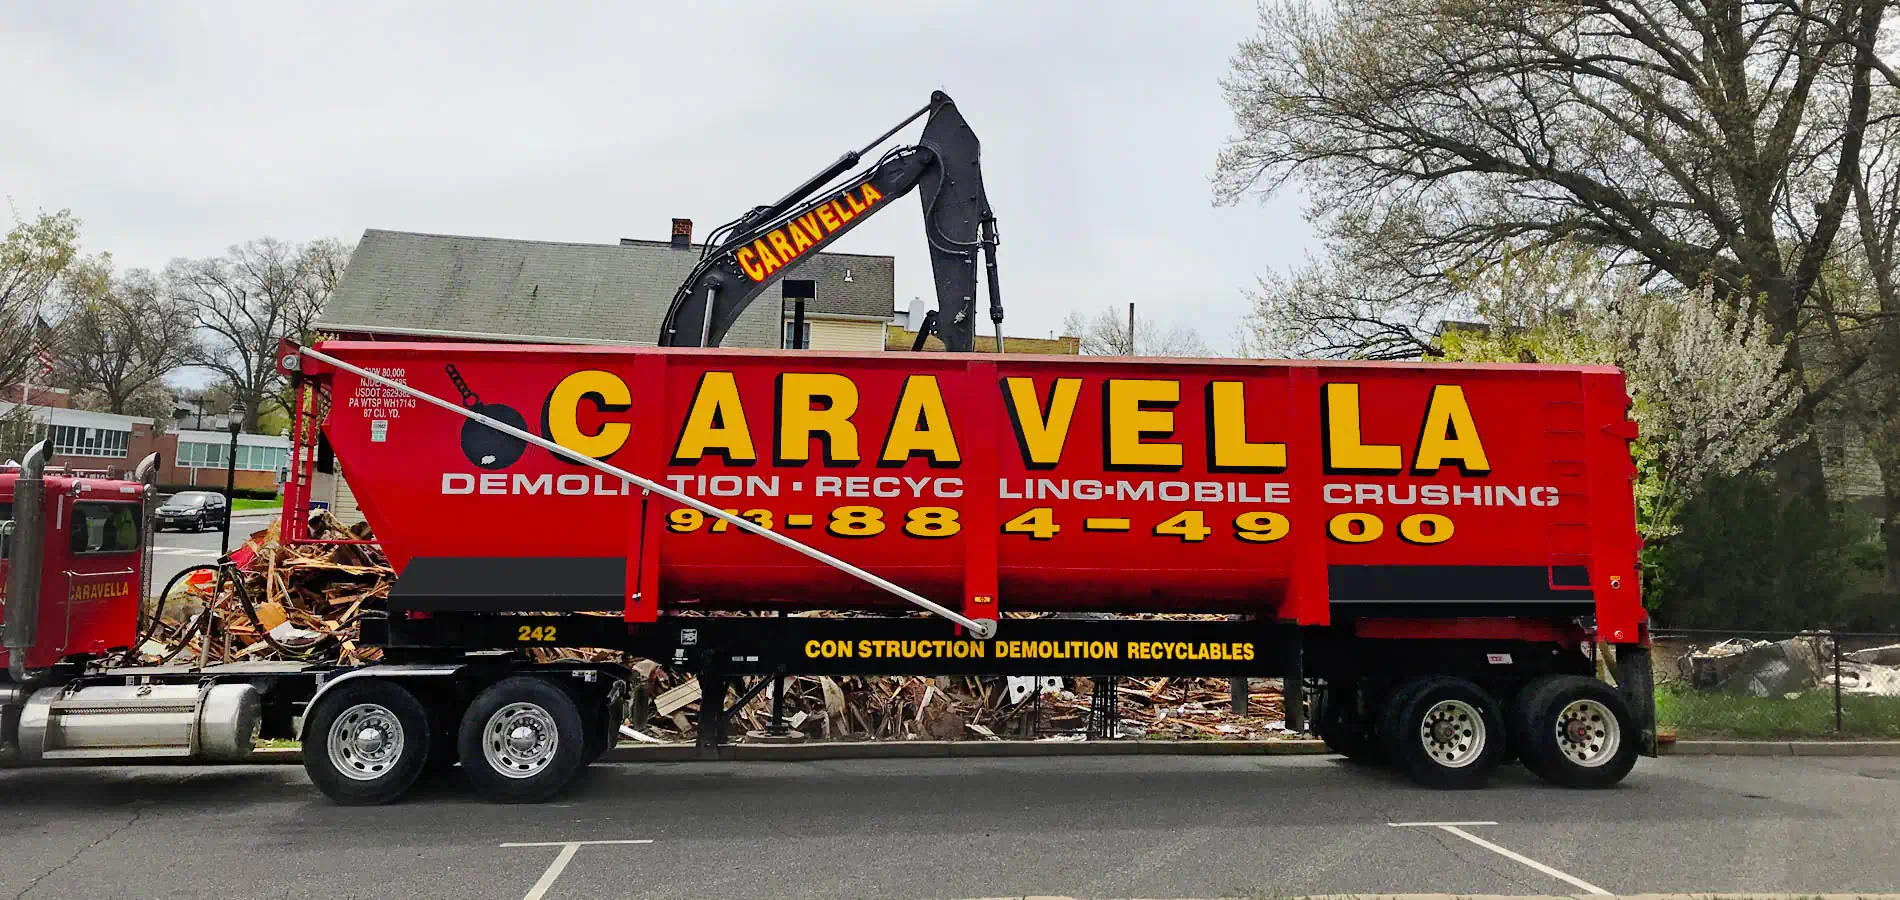 Demolition Services in Freehold, NJ 07728 | Caravella Demolition